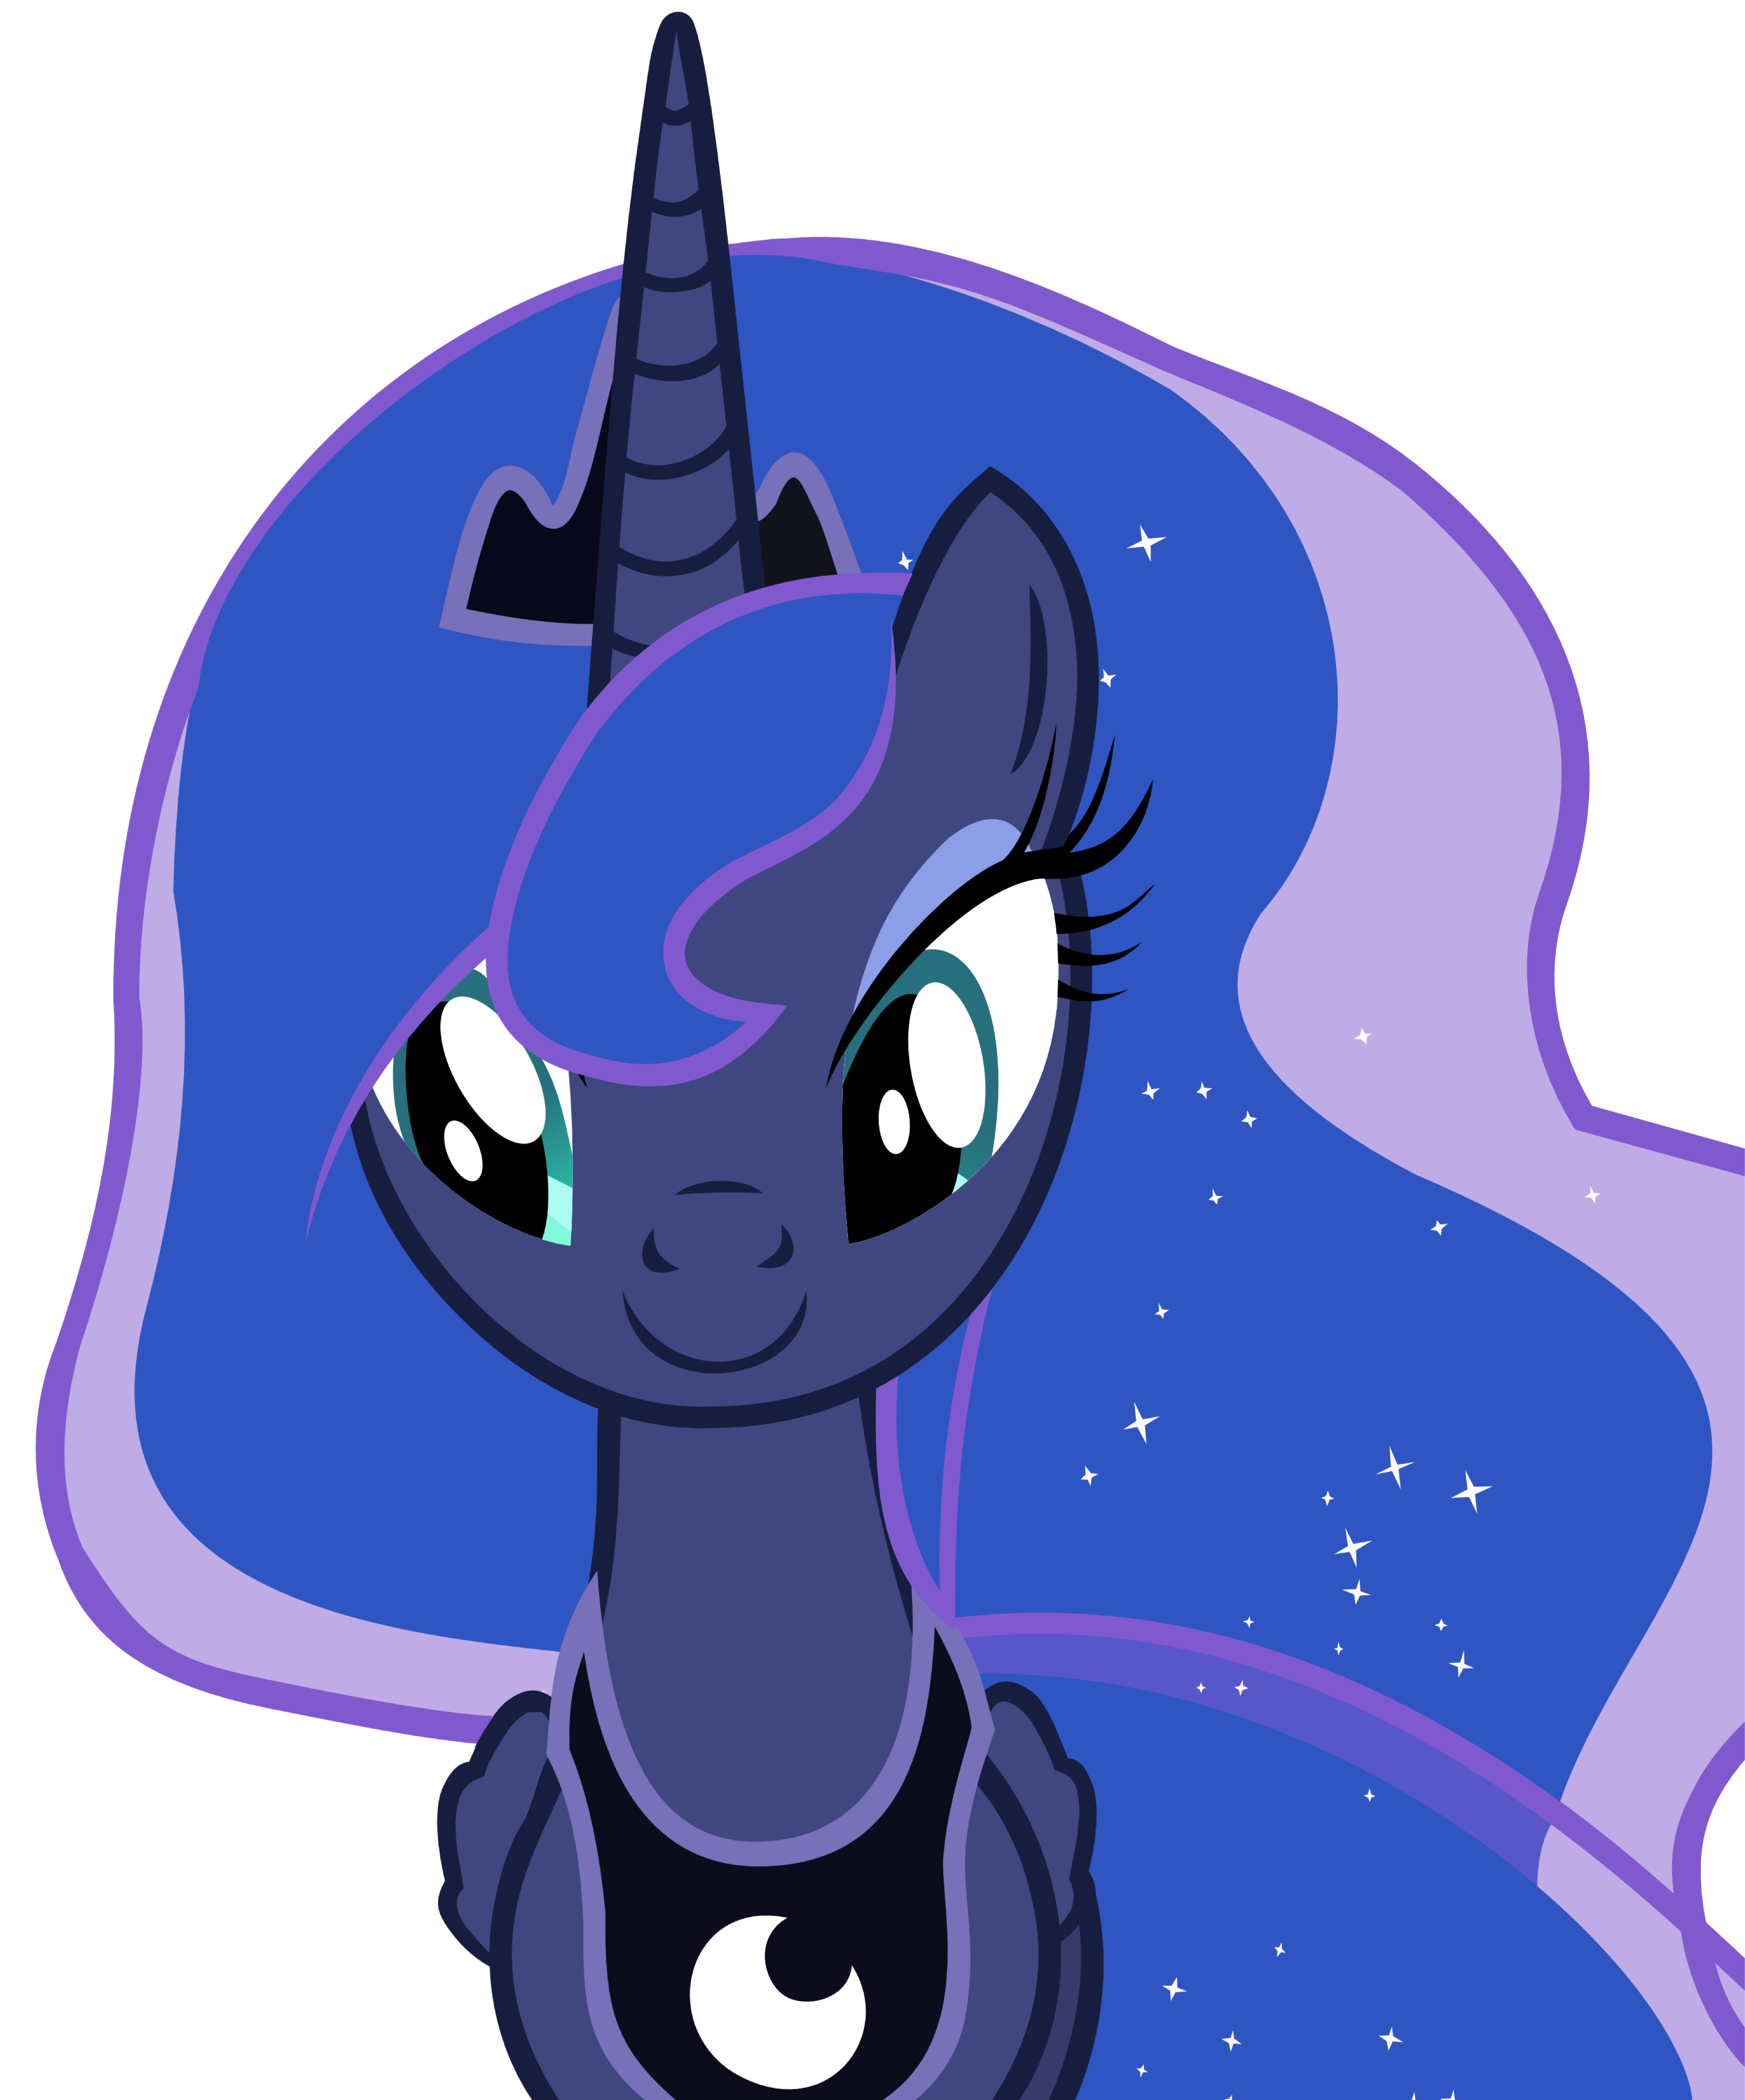 Download Vector #8 - Princess Luna by DashieSparkle on DeviantArt